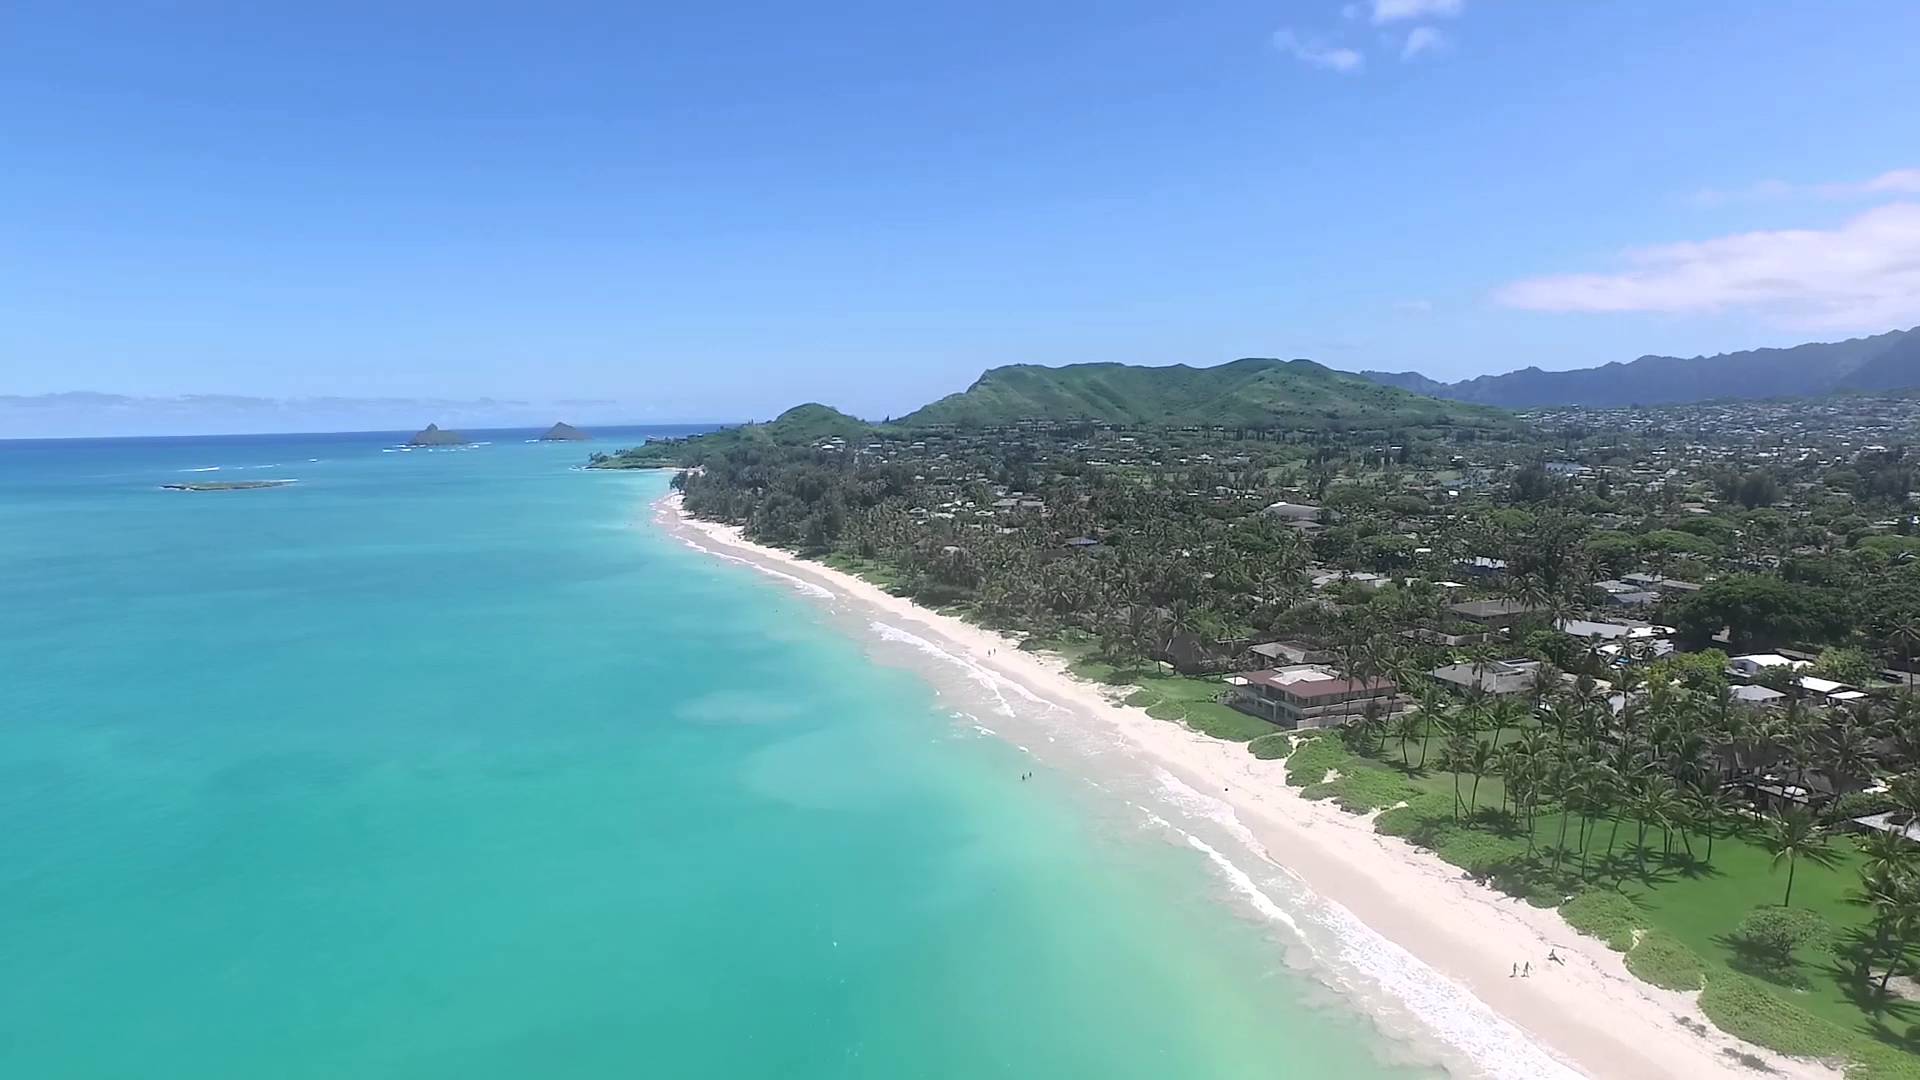 Kailua Beach Aerial View - YouTube